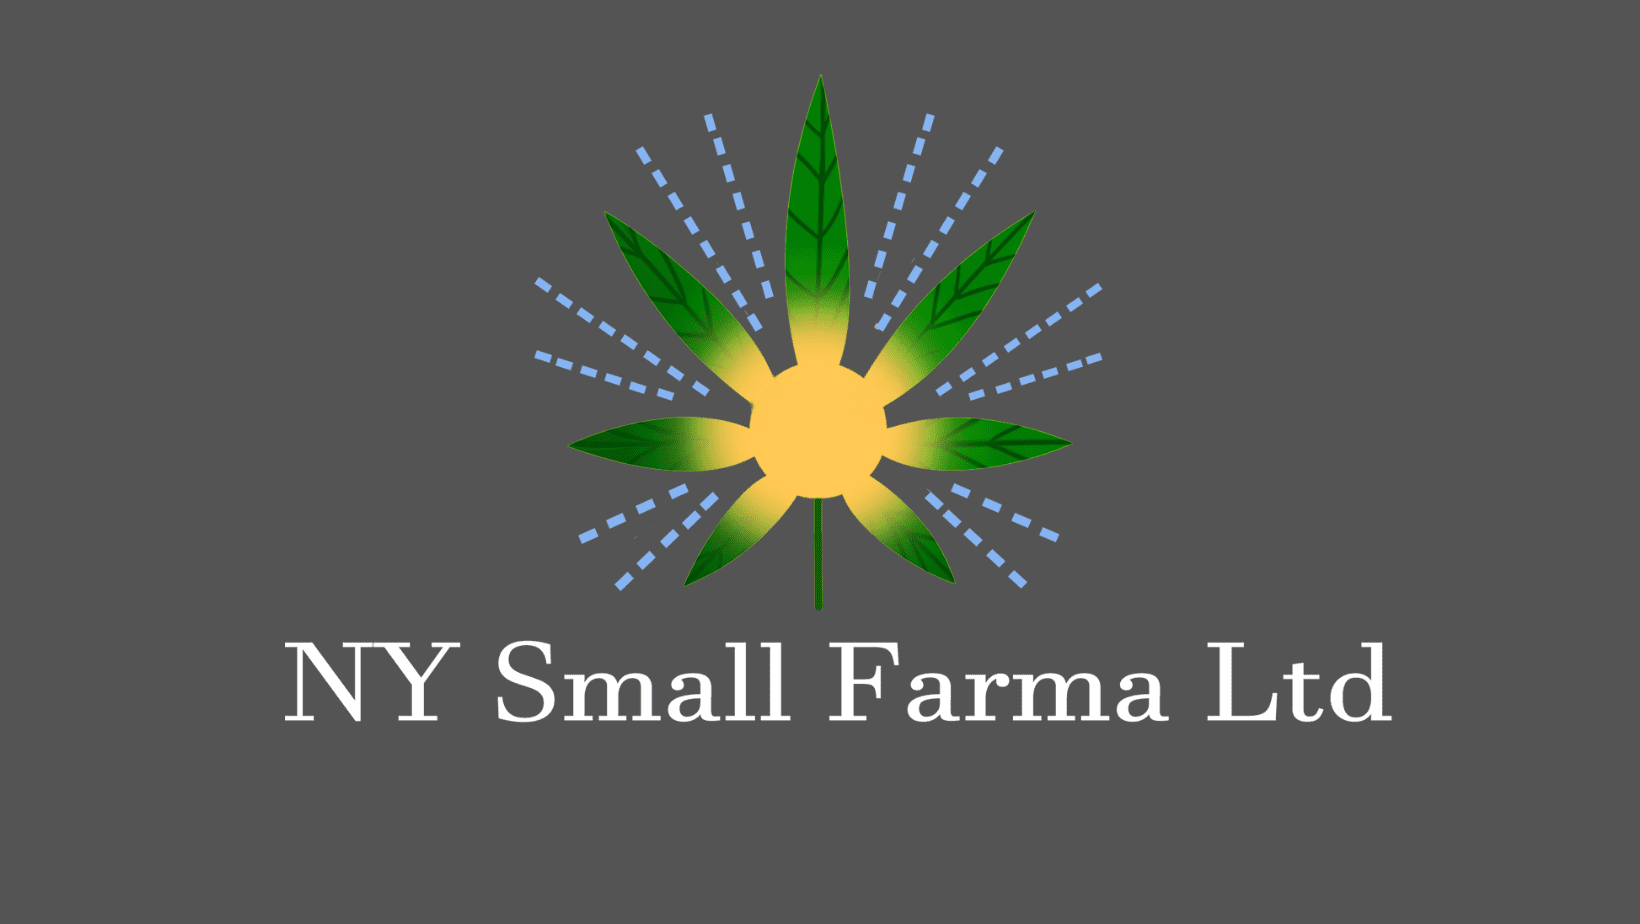 NY Small Farma